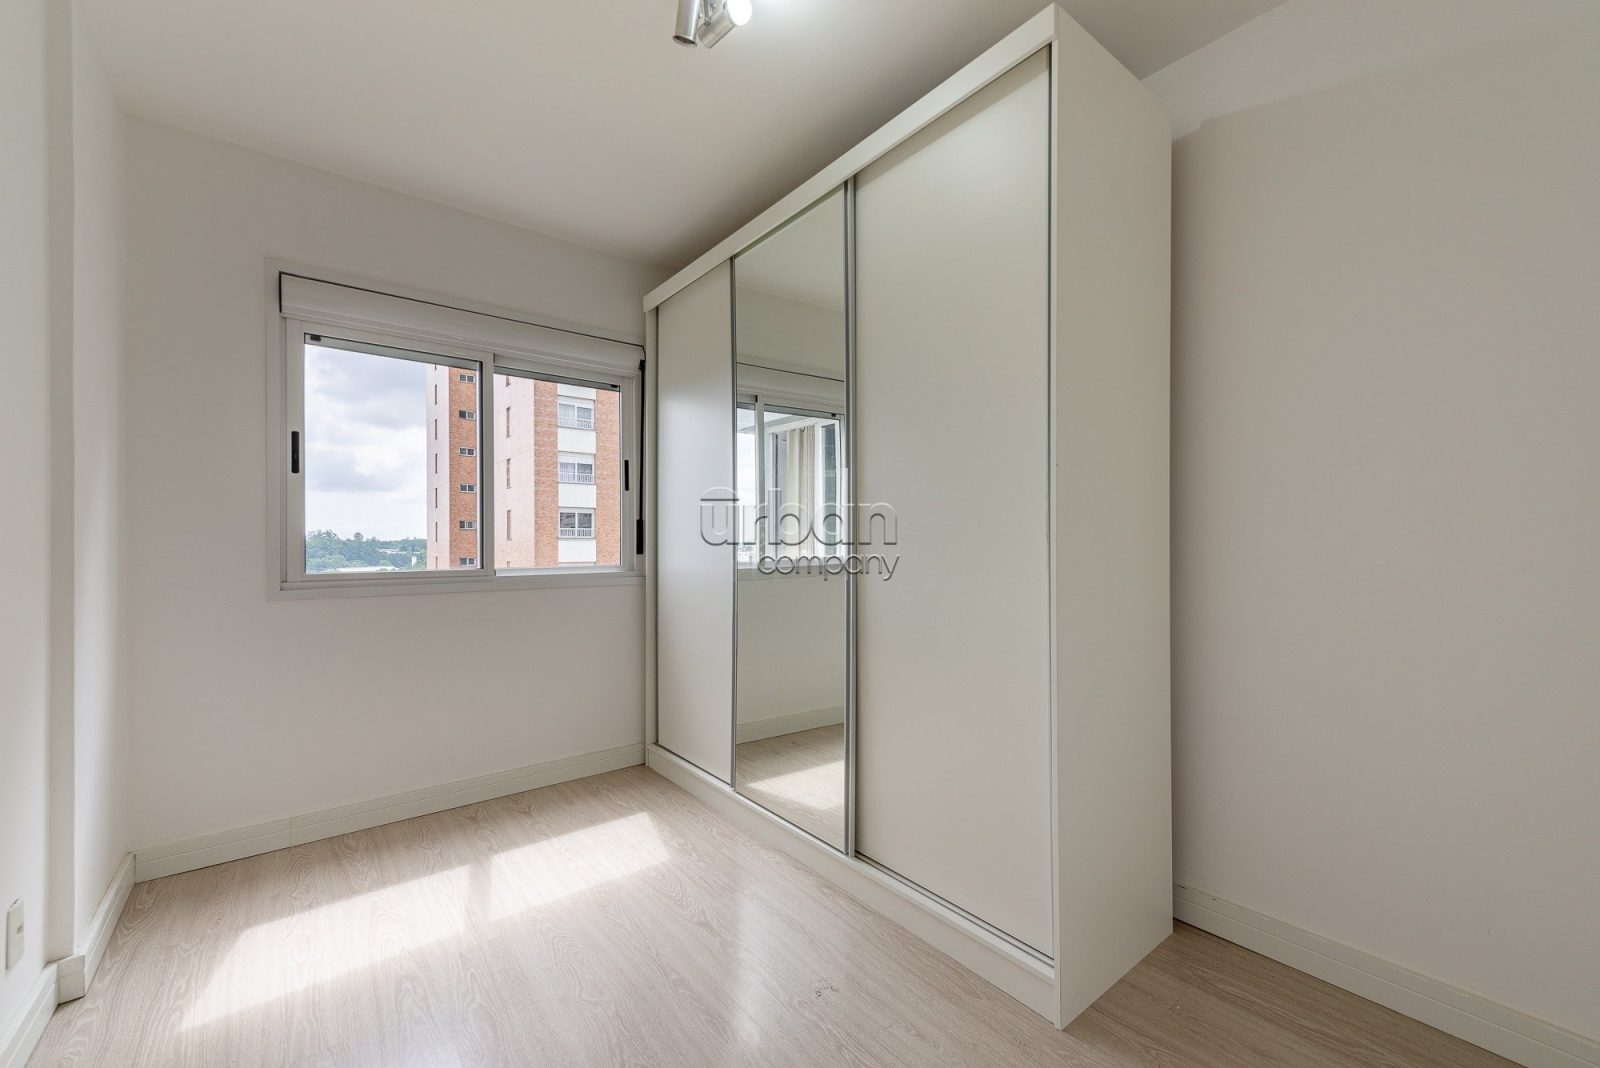 Apartamento com 83m², 2 quartos, 2 vagas, no bairro Central Parque em Porto Alegre